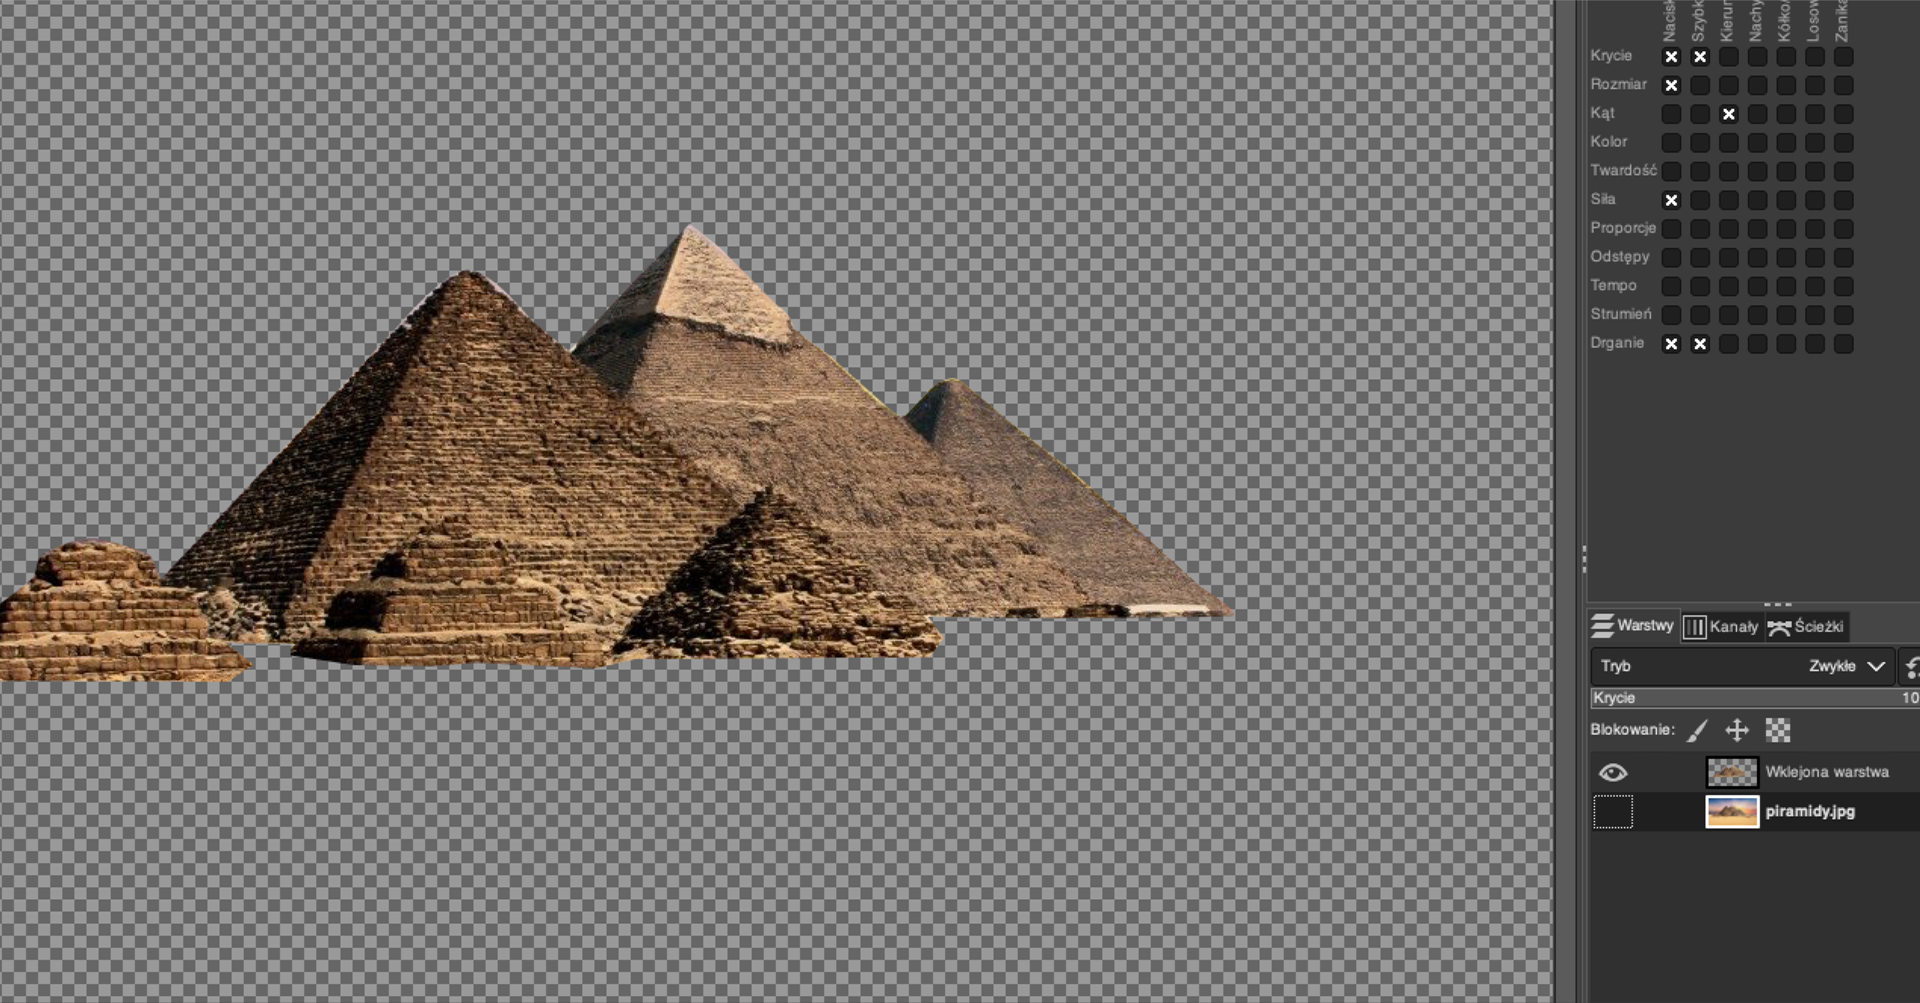 Ilustracja przedstawia okno w programie GIMP. Wewnątrz okna znajduje się fragment zdjęcia z piramidami – same budowle, zamiast nieba i tła widnieje drobna kratka w dwóch odcieniach szarości. Z prawej strony znajduje się pasek menu. Wybrana jest opcja warstwy i pozycja Krycie 100%. 